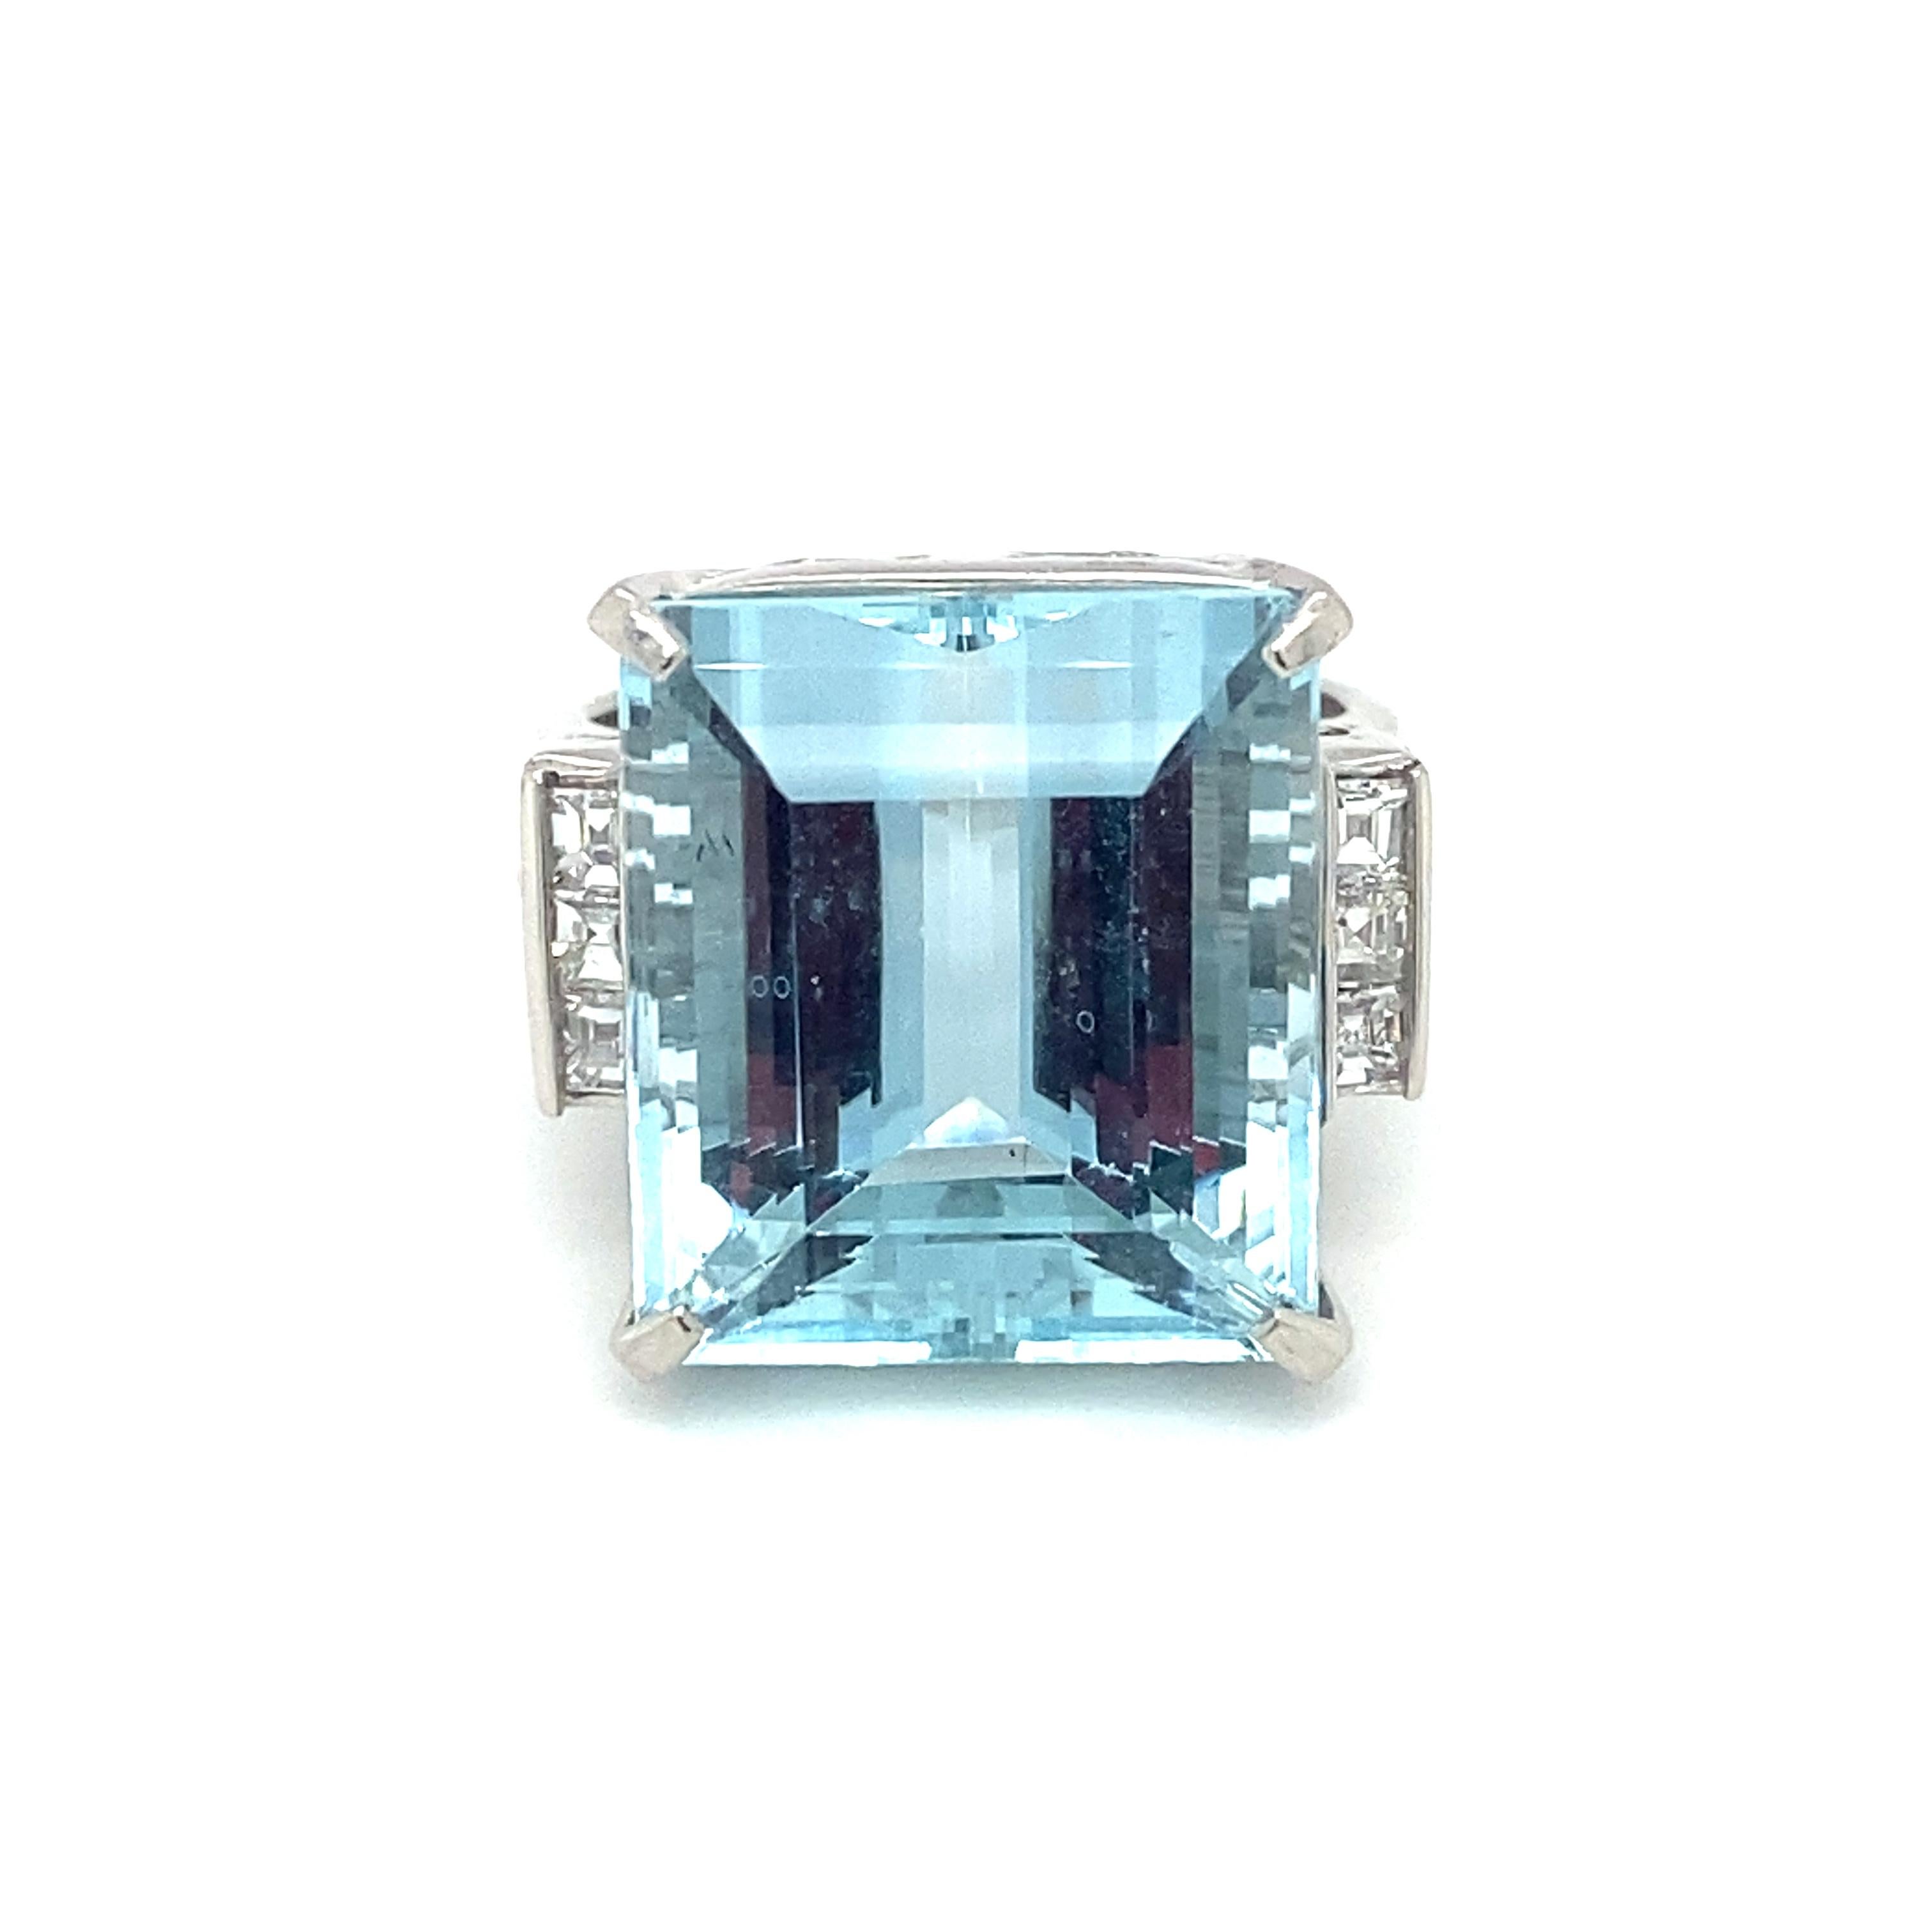 Emerald Cut 1960s, 15.32 Carat Aquamarine and Diamond Cocktail Ring in Platinum